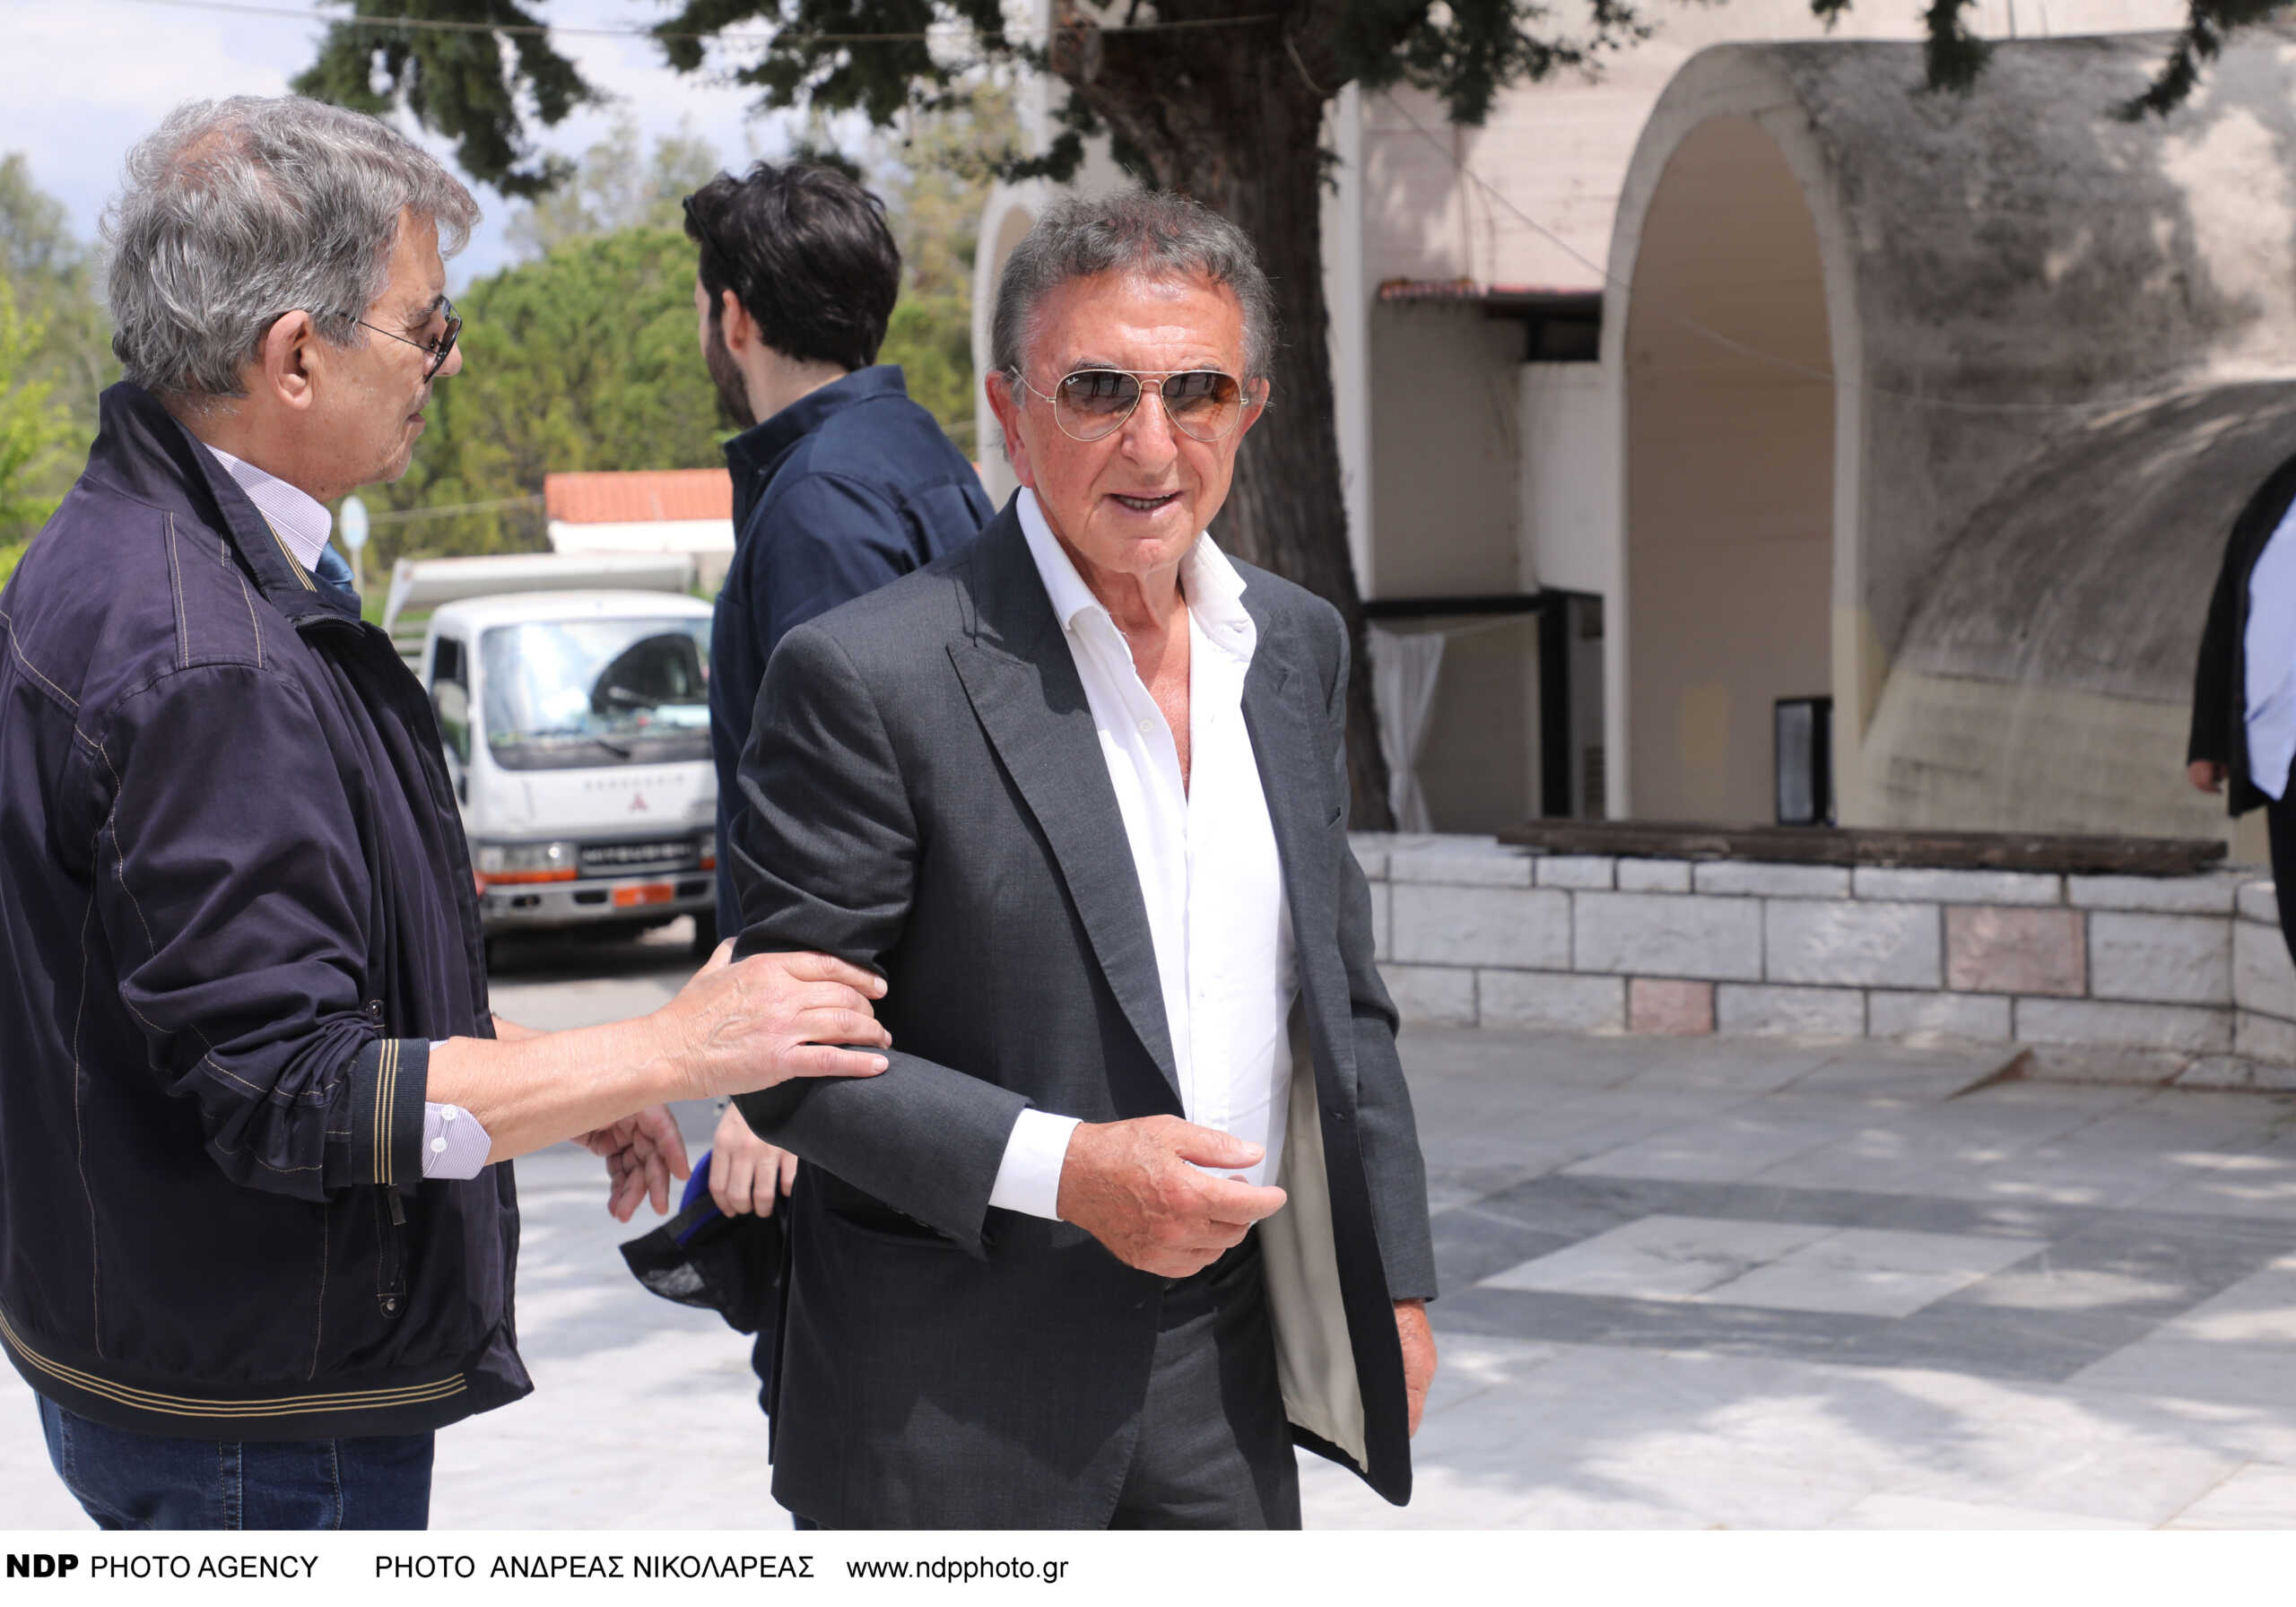 Αργύρης Παπαργυρόπουλος: Έχασε σε πλειστηριασμό τη βίλα του στη Γλυφάδα – Πουλήθηκε για 7.500.000 ευρώ